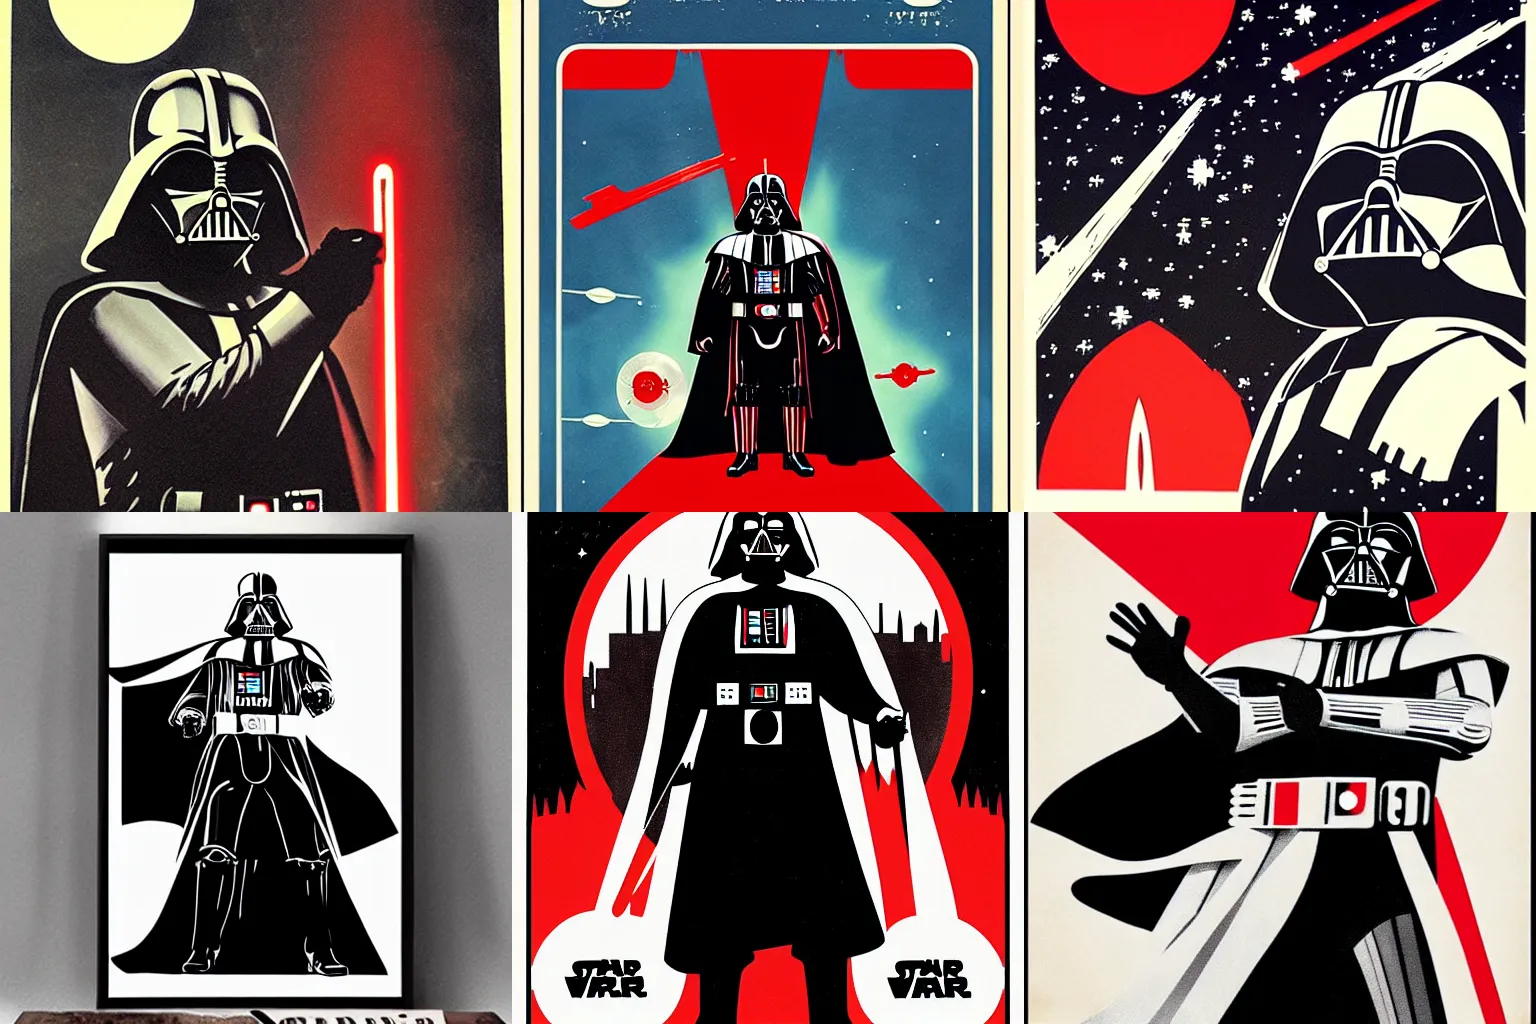 Prompt: Darth Vader in Soviet space propaganda poster